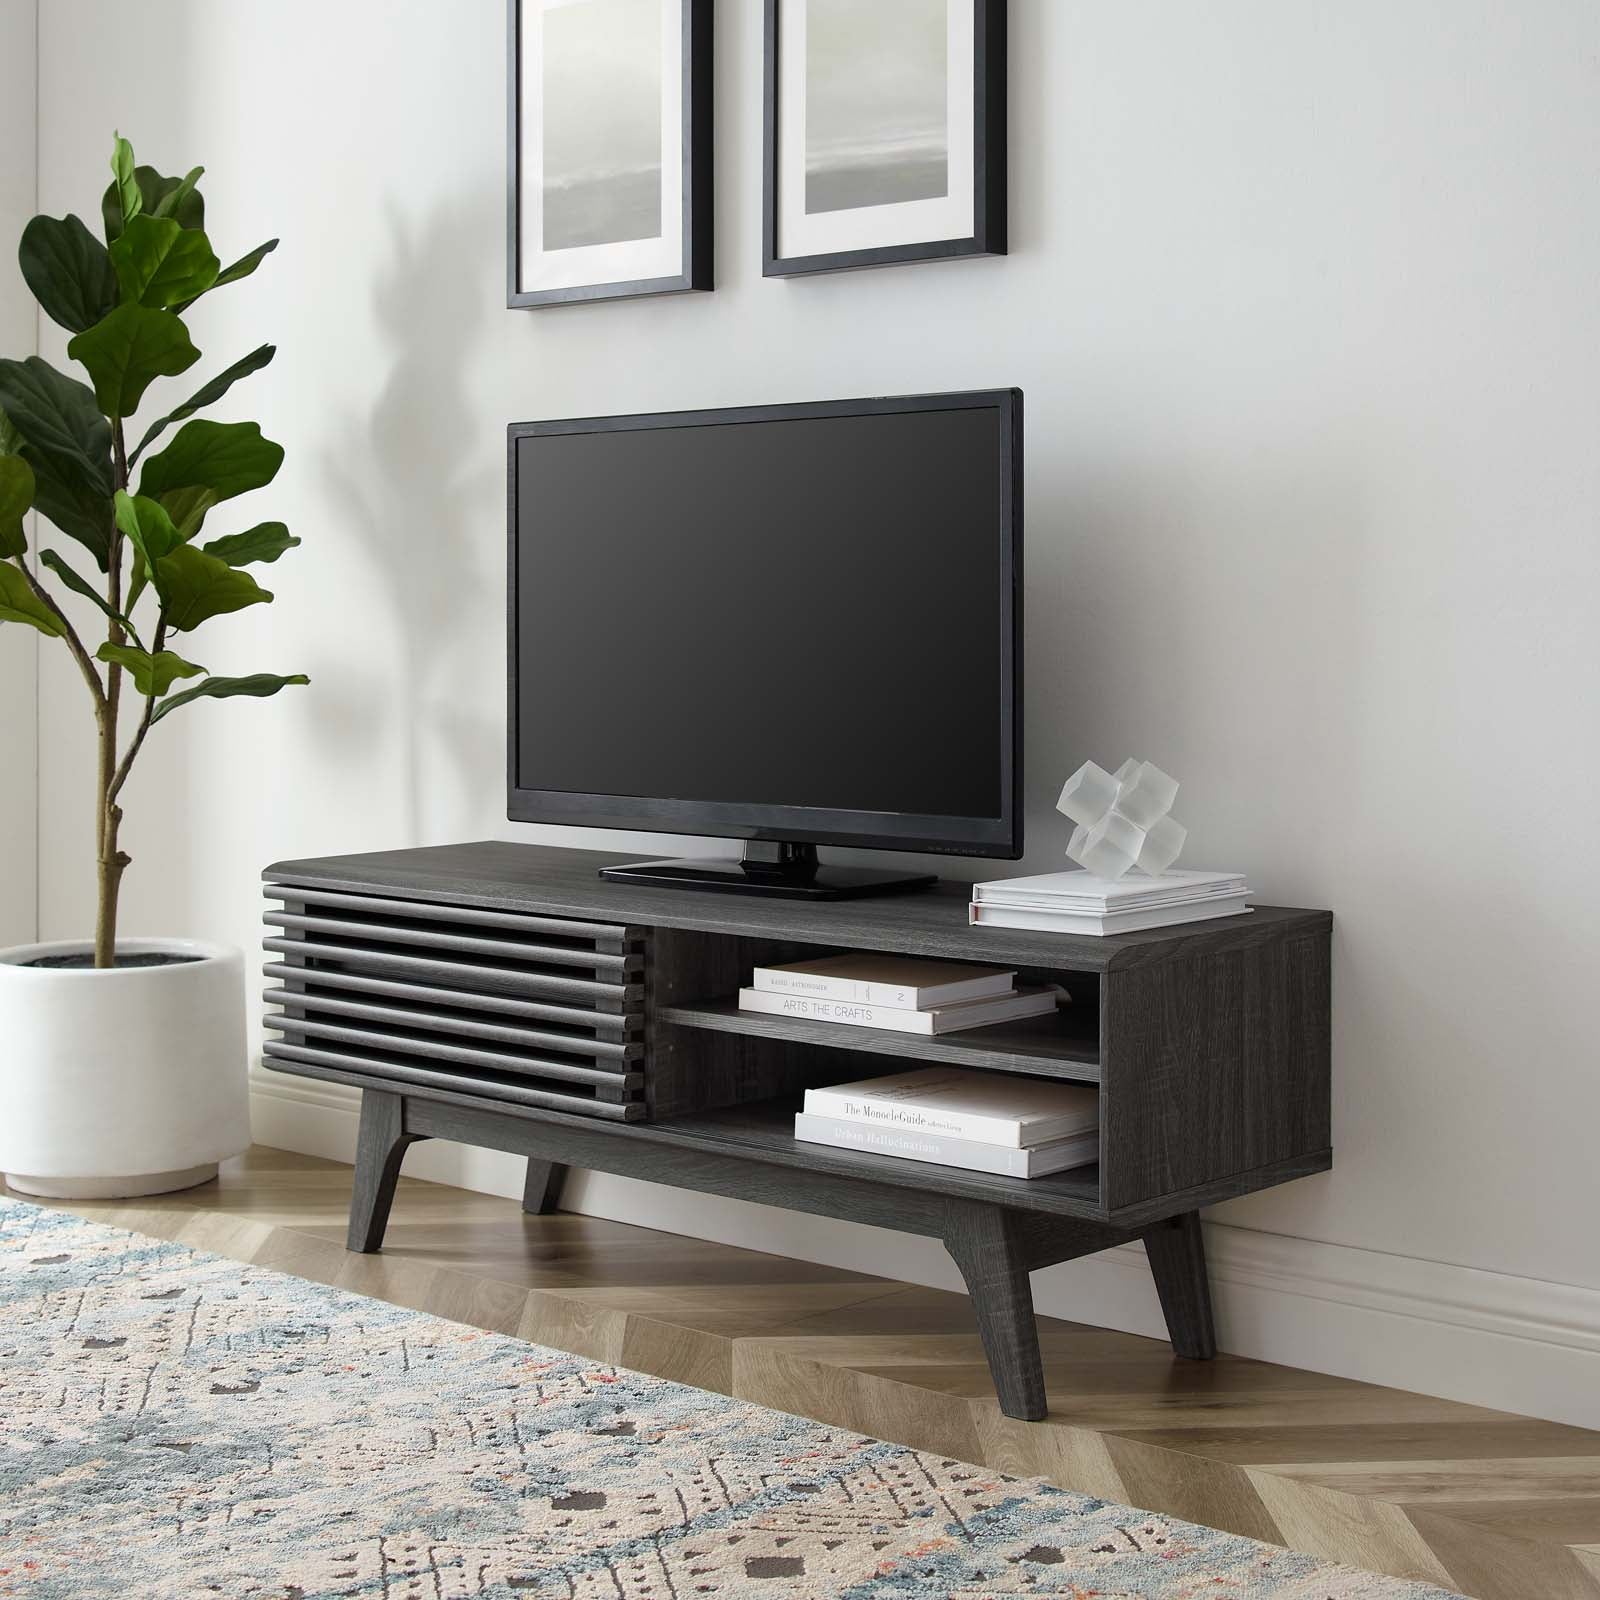 Mueble de 48” para TV Niklas color negro en una sala.